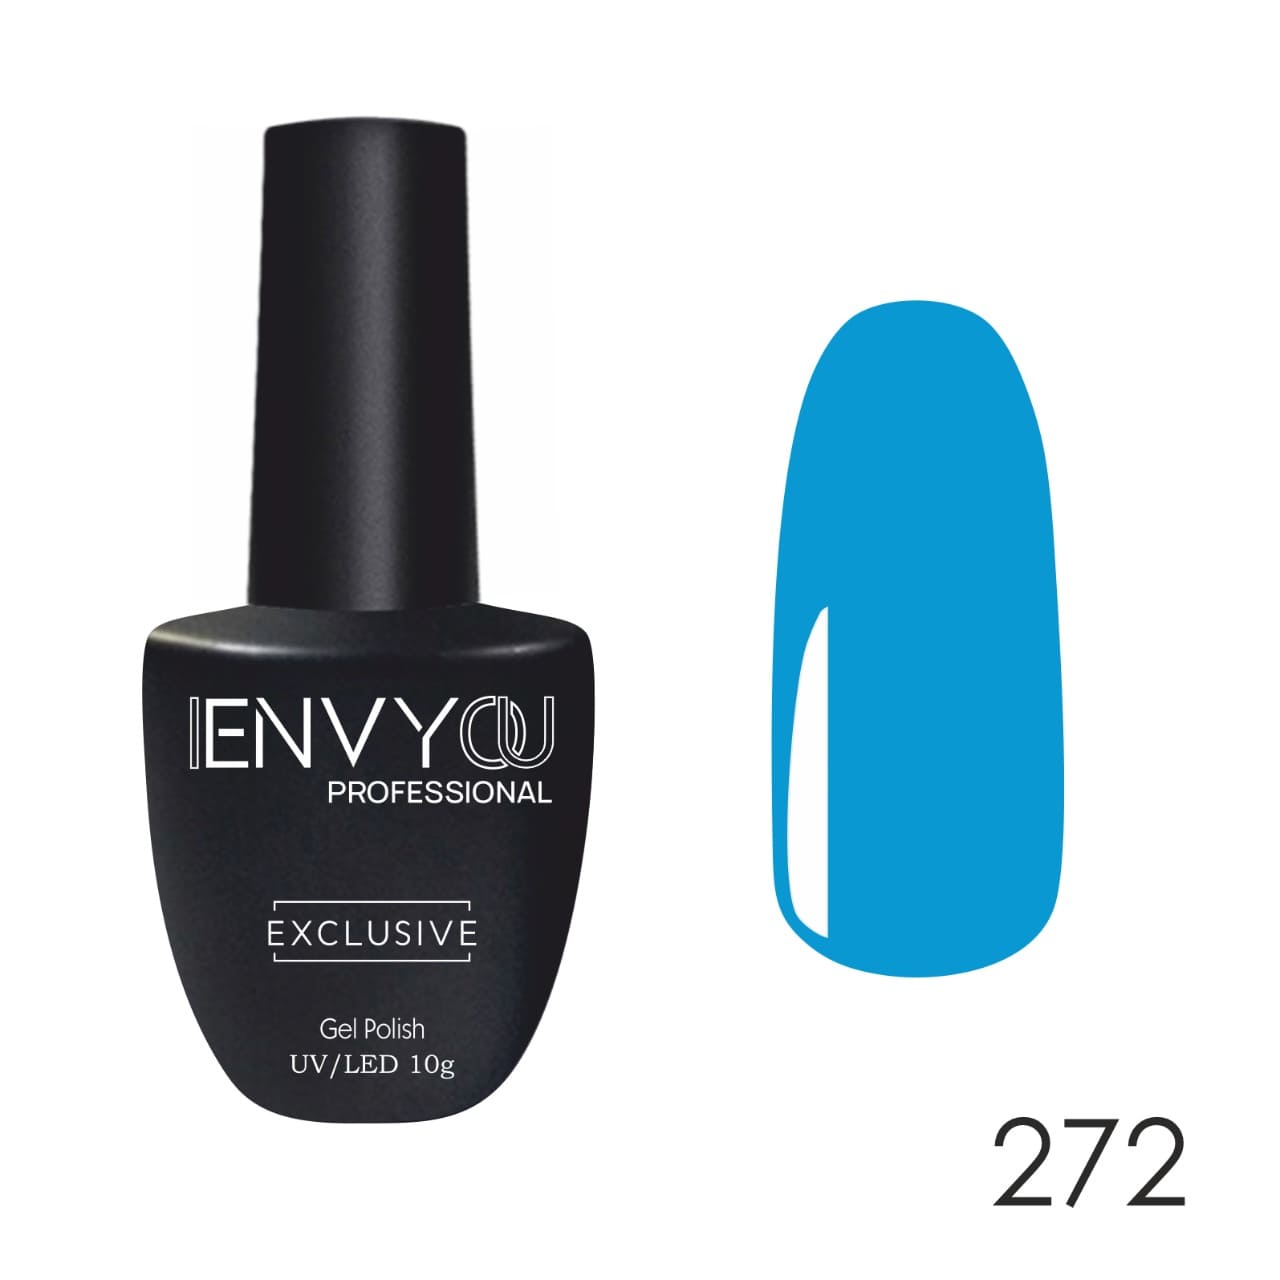 ENVY - Exclusive 272 (10 )*